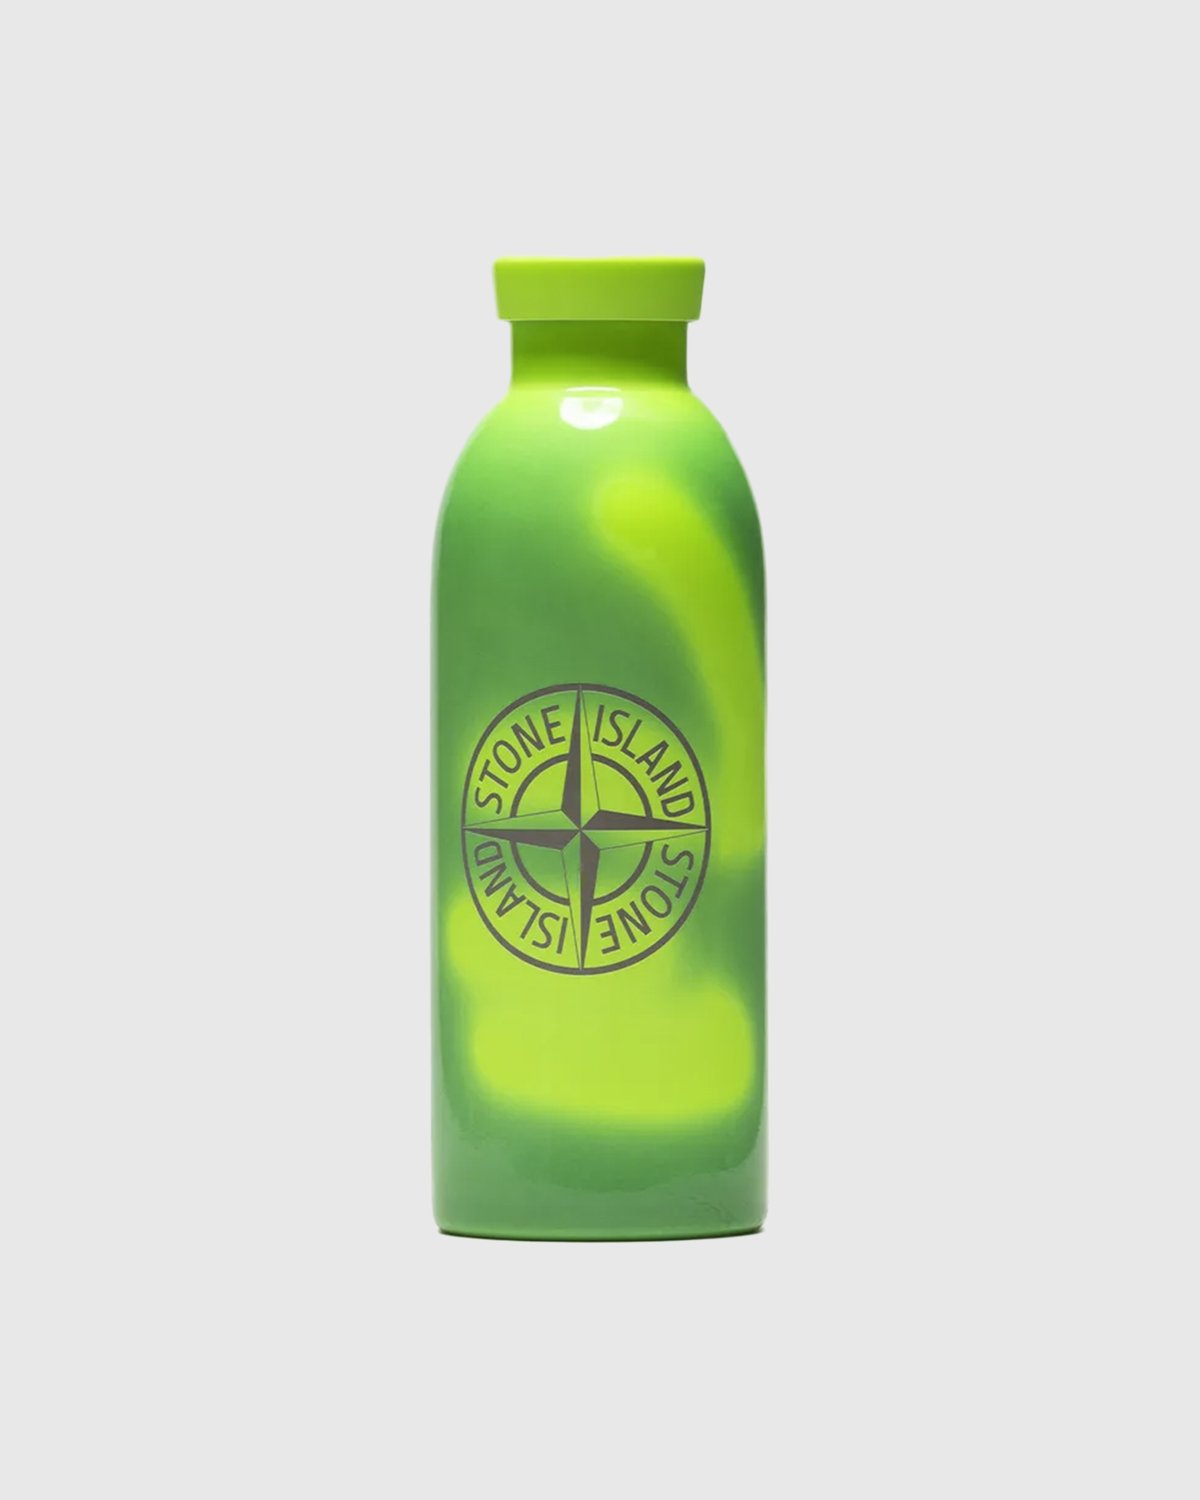 Stone Island - Clima Bottle Green - Lifestyle - Green - Image 2